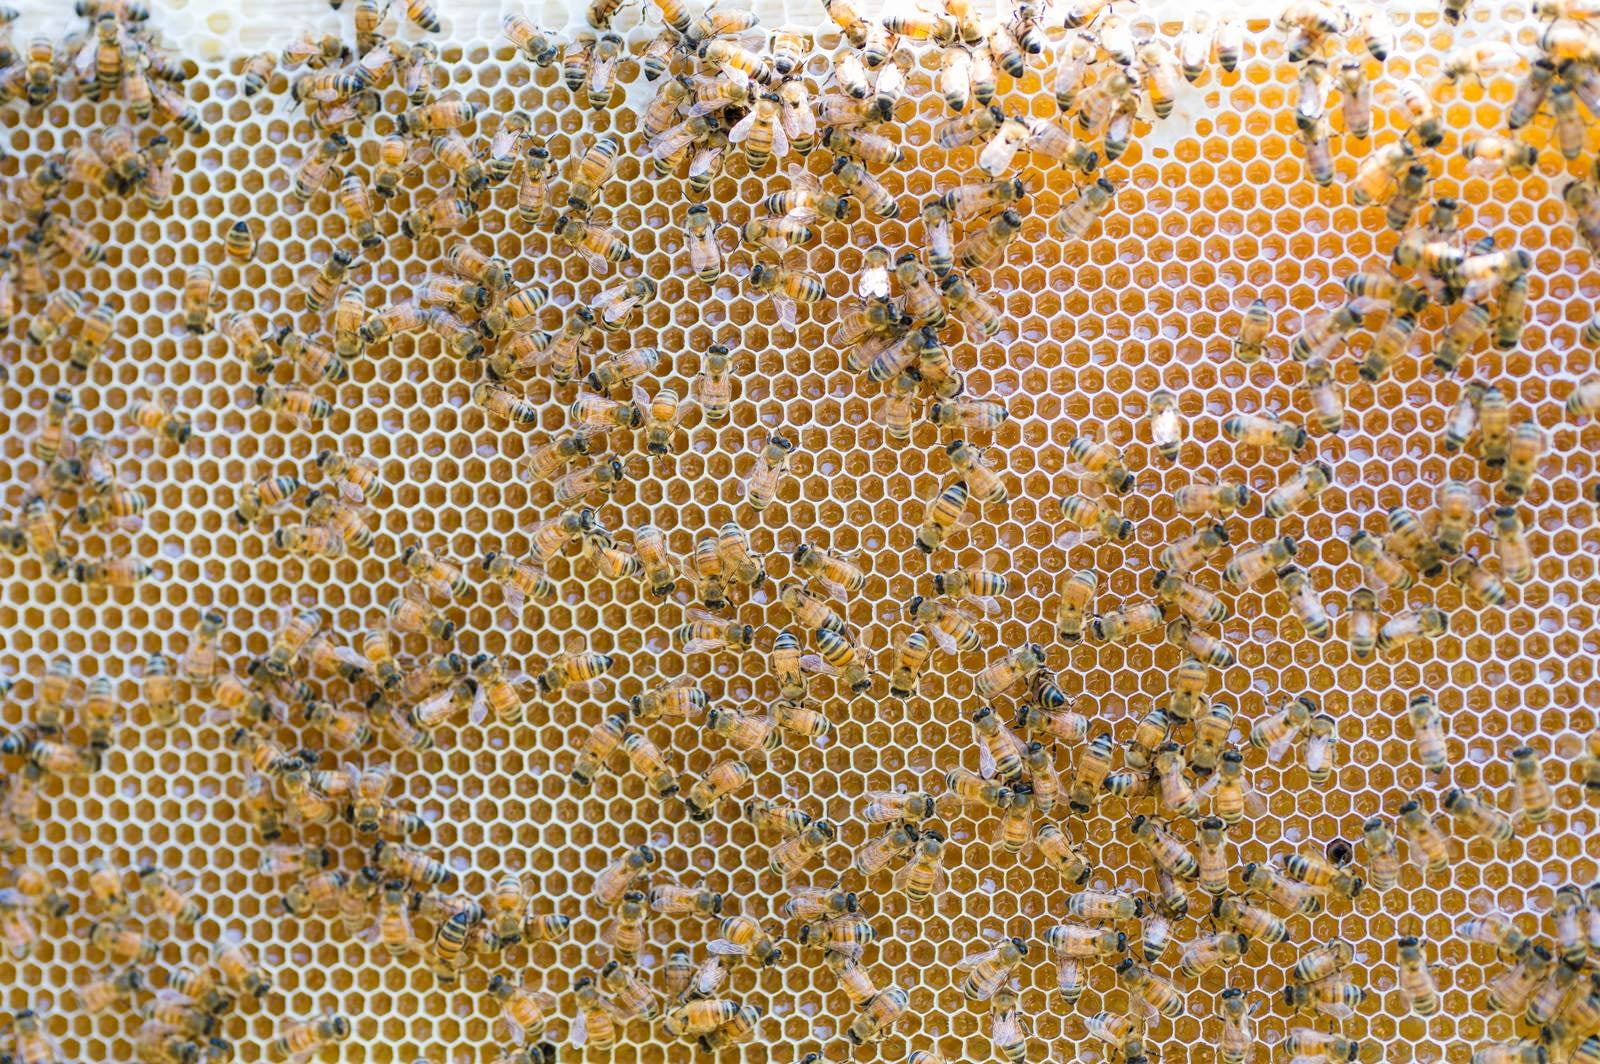 「ハチミツを熟成させているところ」の写真